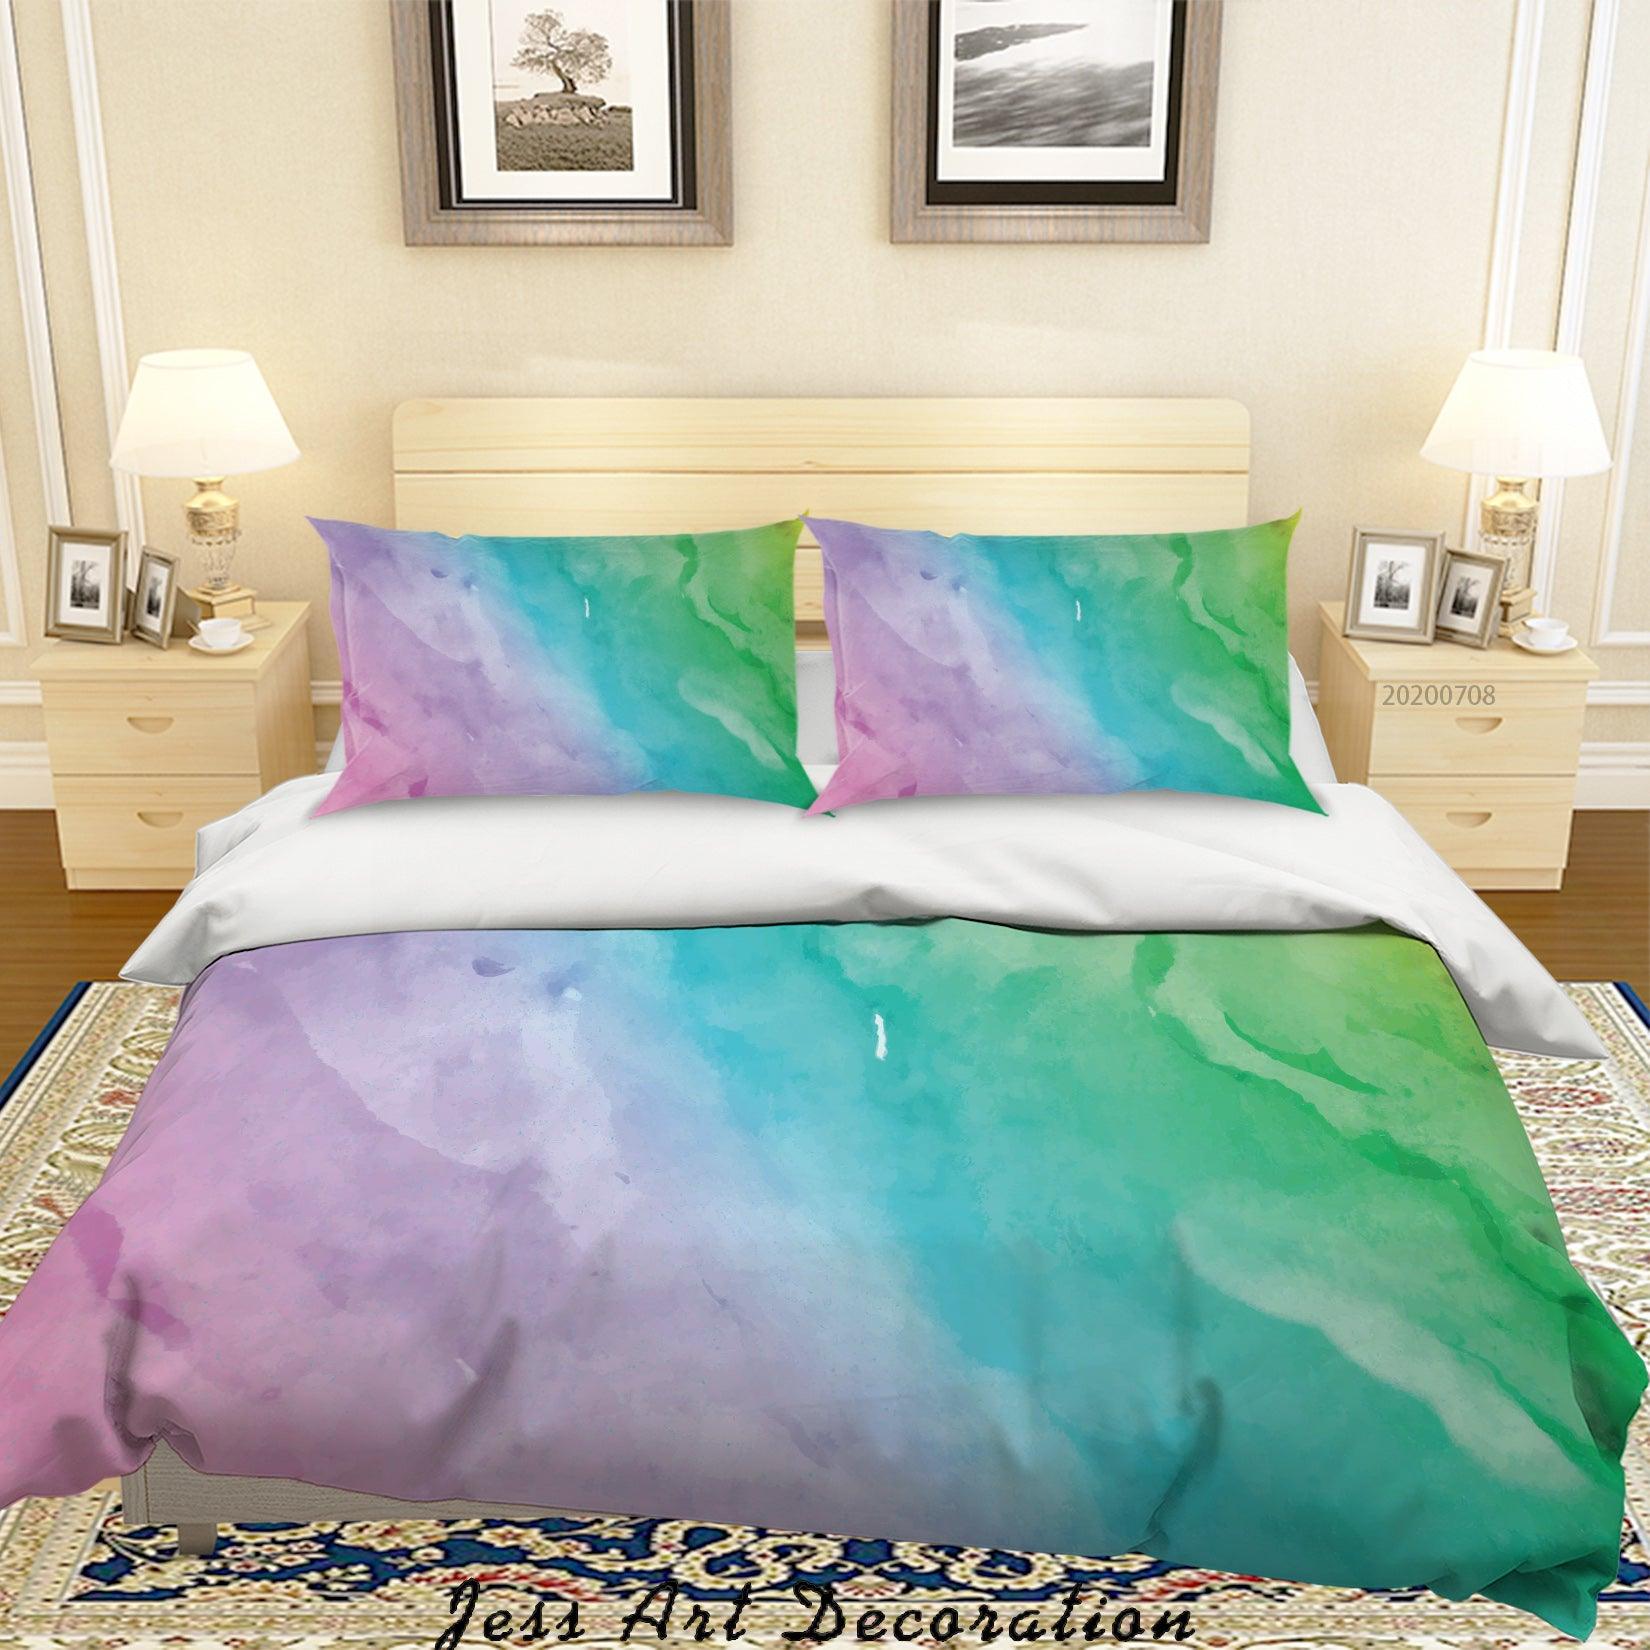 3D Watercolor Gradient Quilt Cover Set Bedding Set Duvet Cover Pillowcases SF07- Jess Art Decoration